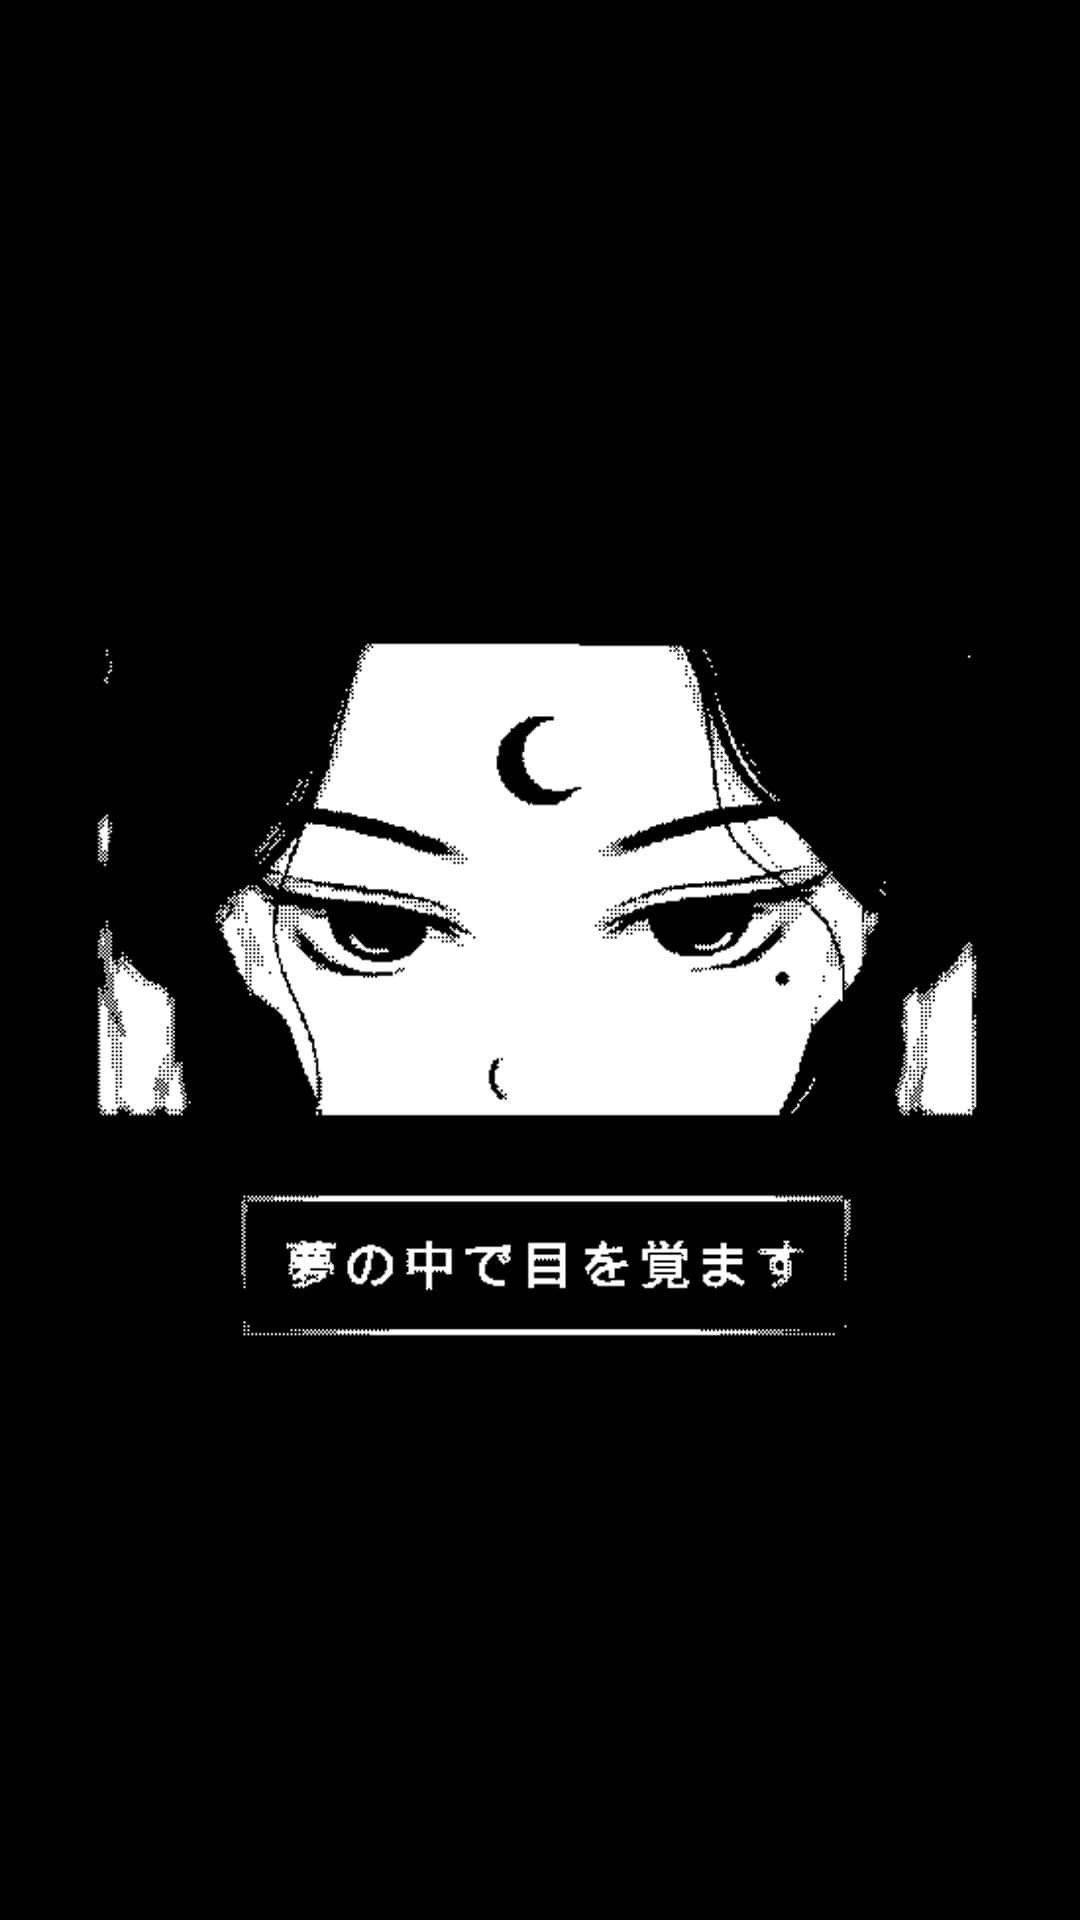 Coolemädchen Anime Schwarz-weiß Iphone Wallpaper